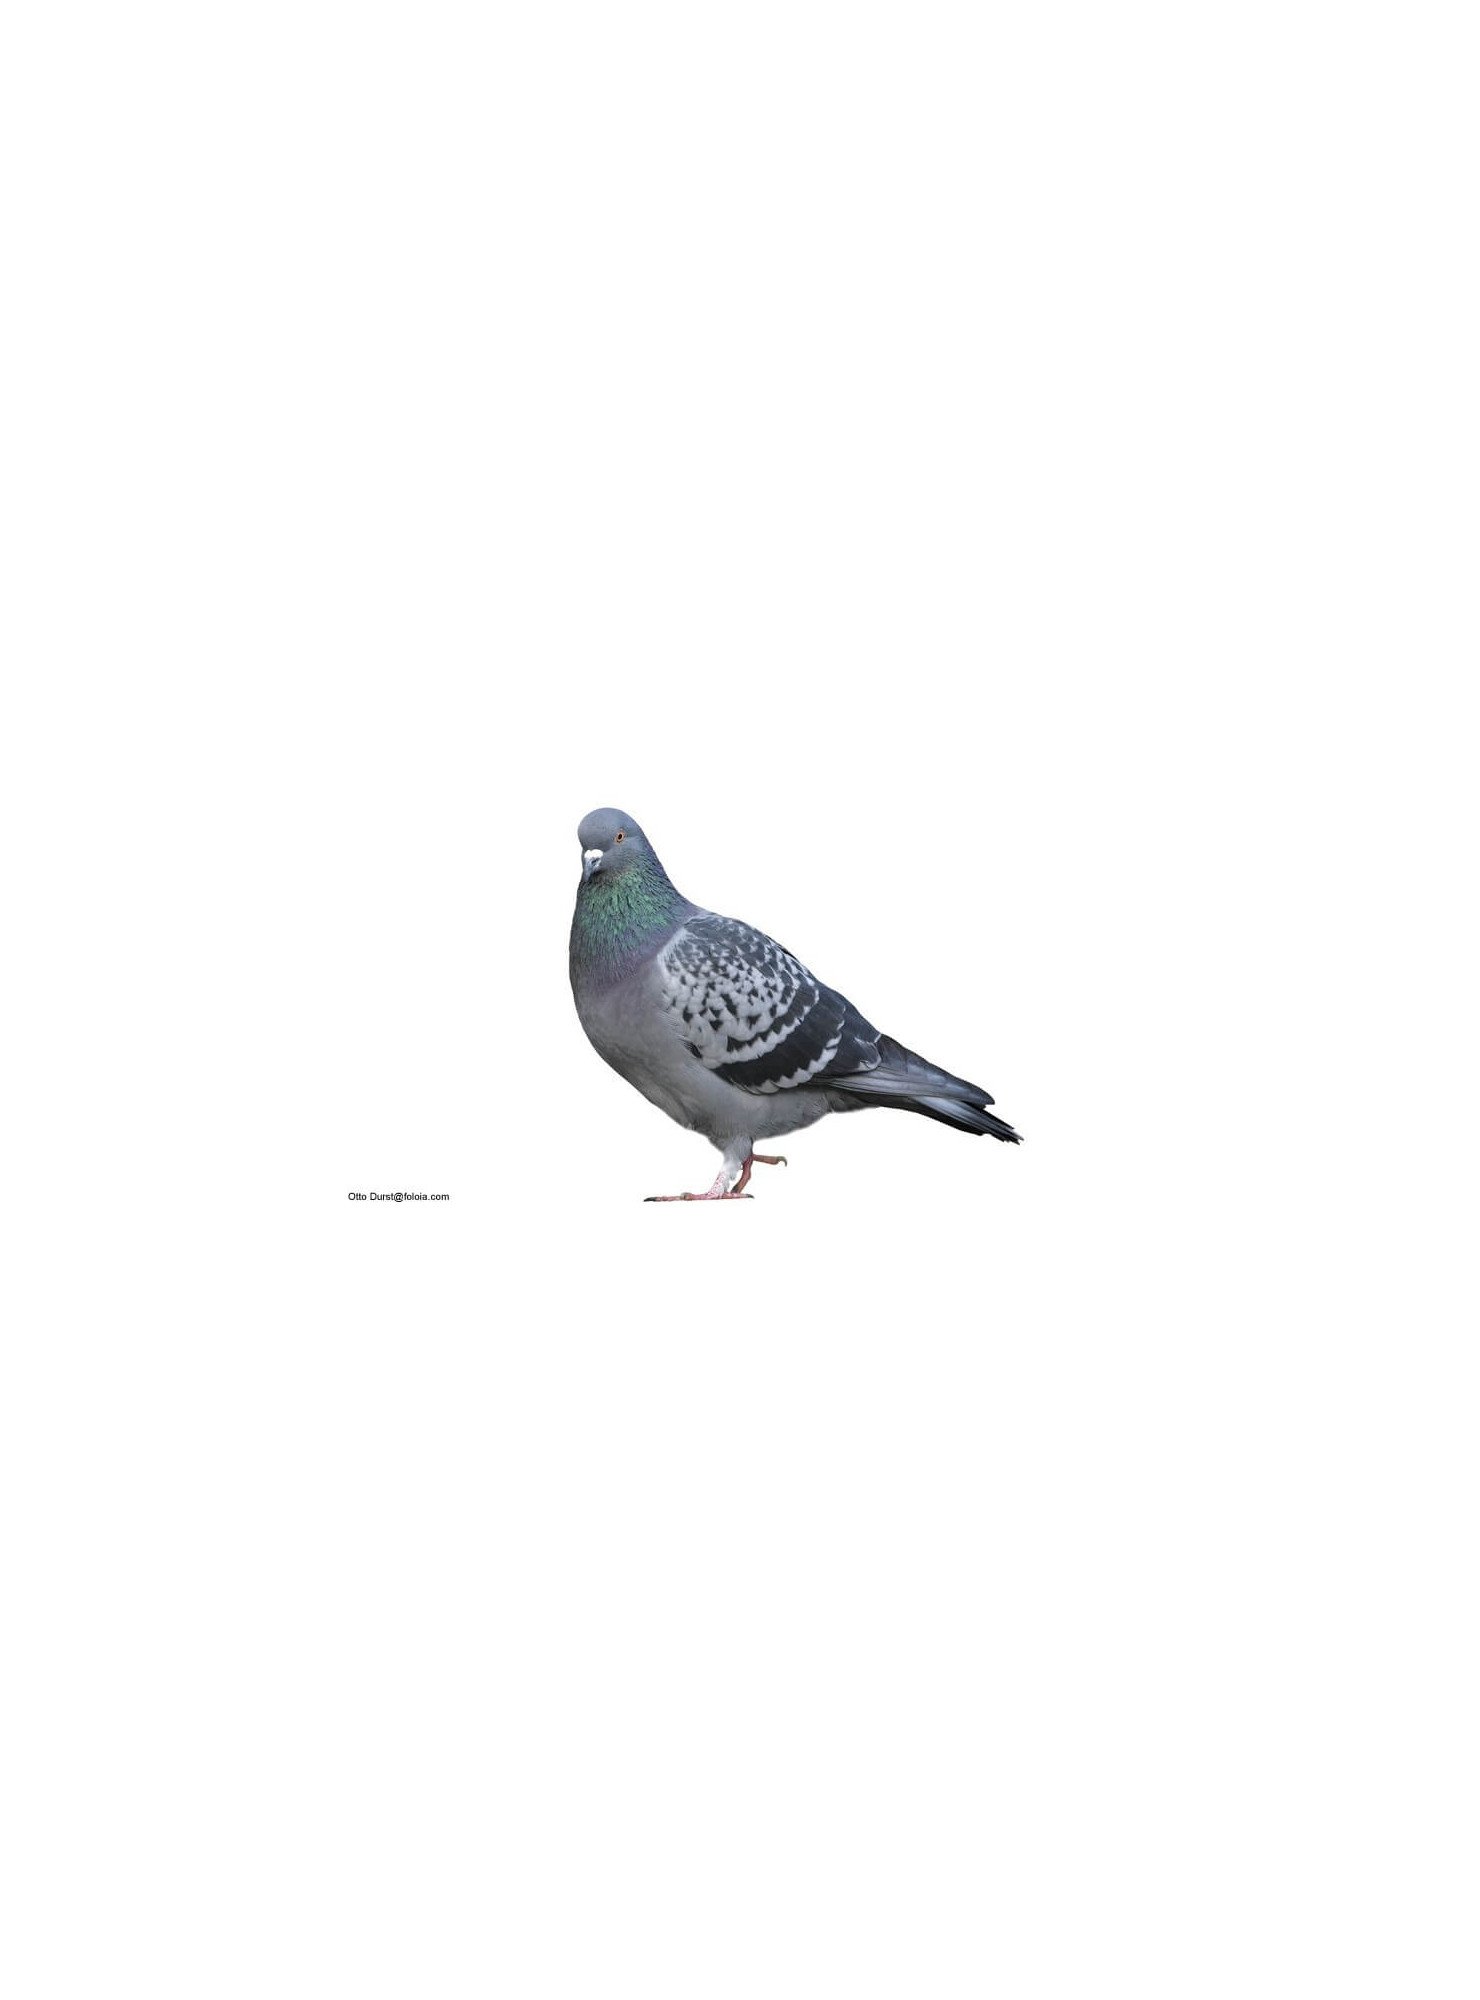 Pigeon Mondain de Jardinerie Bordeaux Libourne Gironde dans Nos conseils